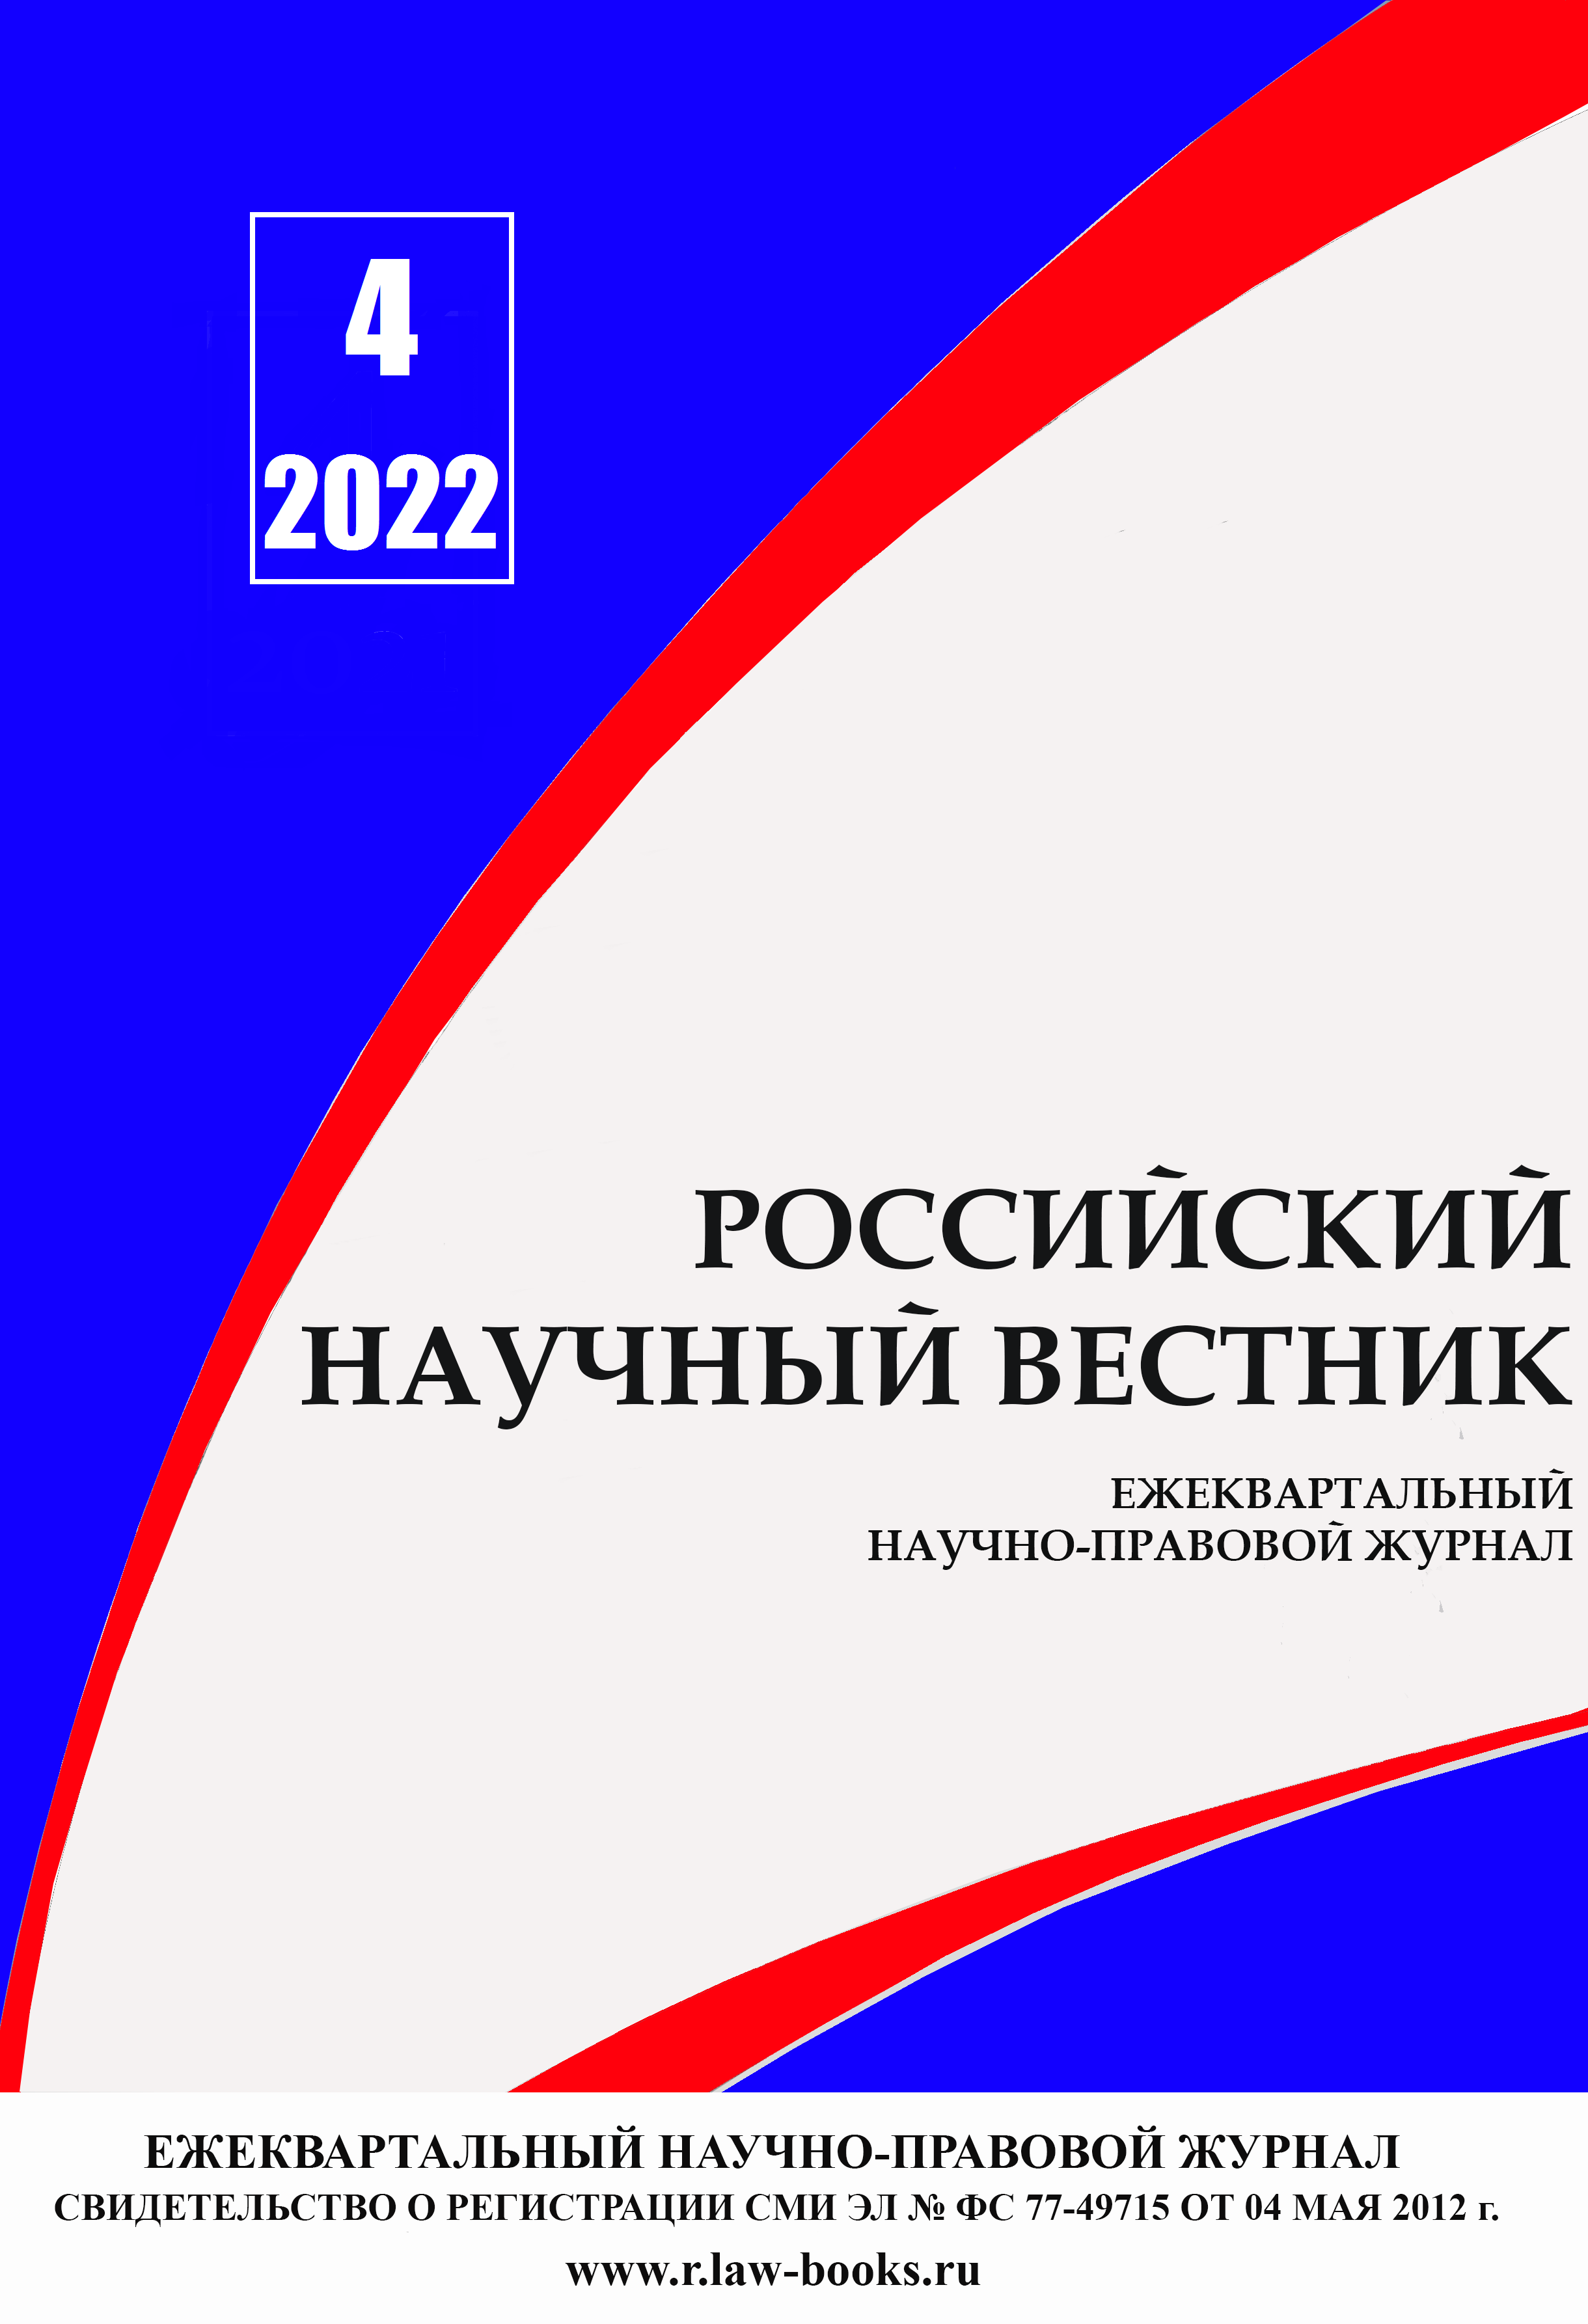 You are currently viewing Российский научный вестник № 4 2022